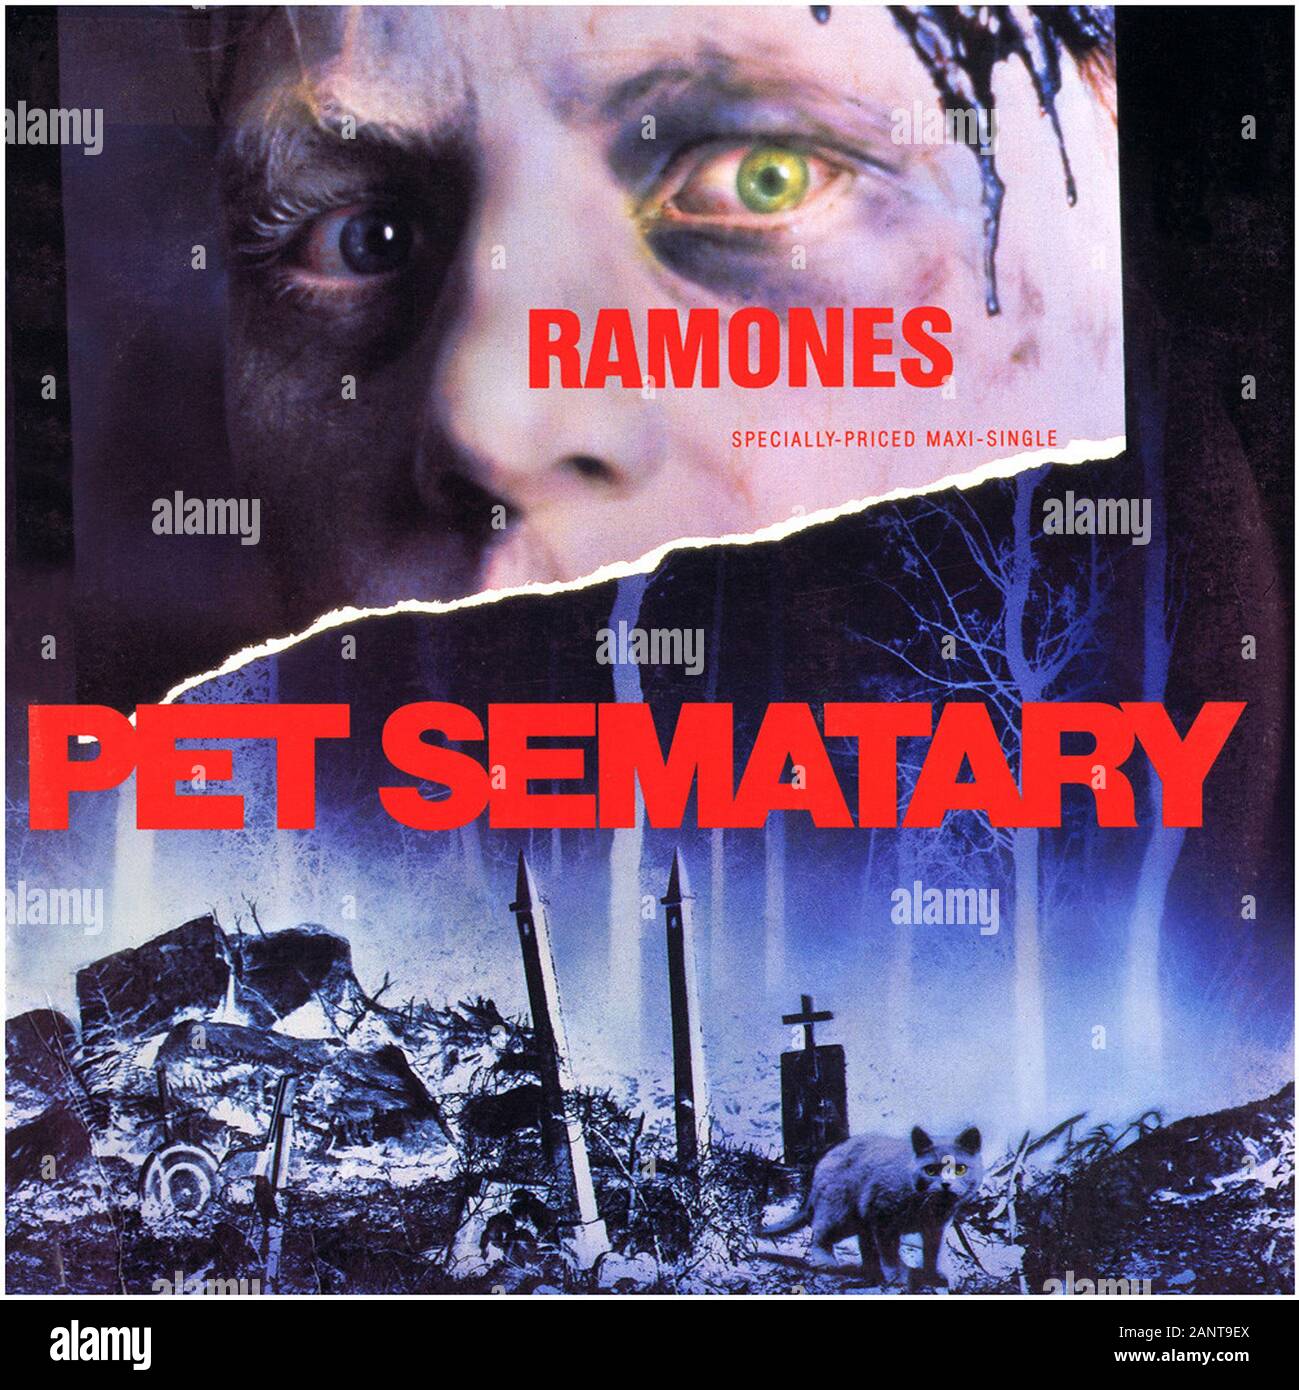 Ramones - Pet Sematary - Classic vintage vinyl album Stock Photo